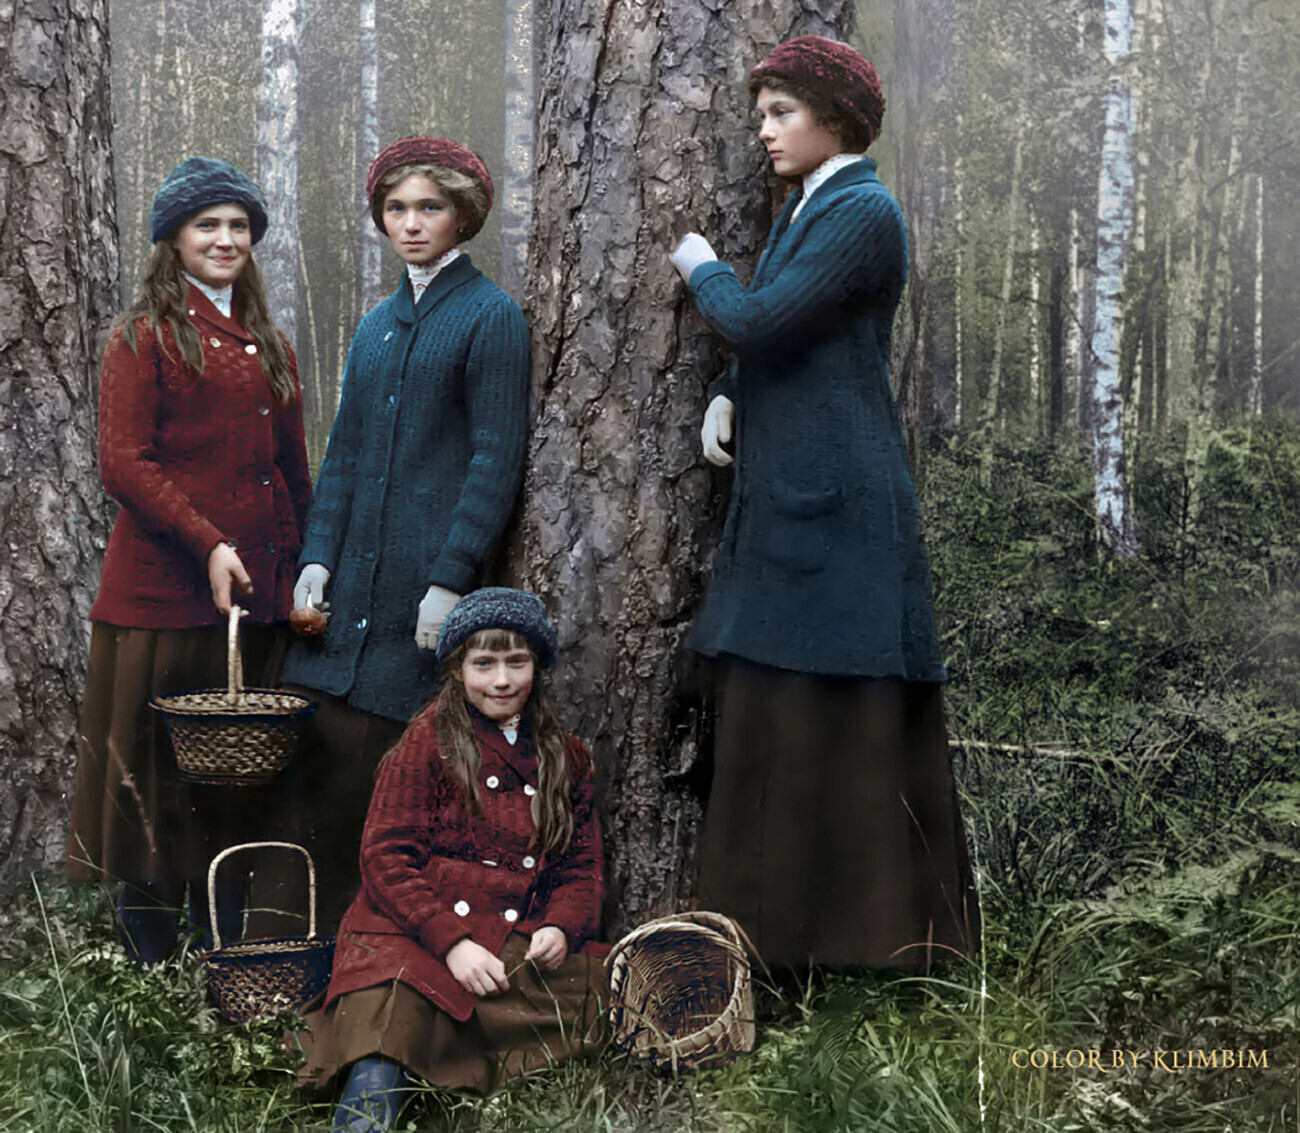 Le quattro figlie di Nicola II impegnate a cercare funghi nel bosco